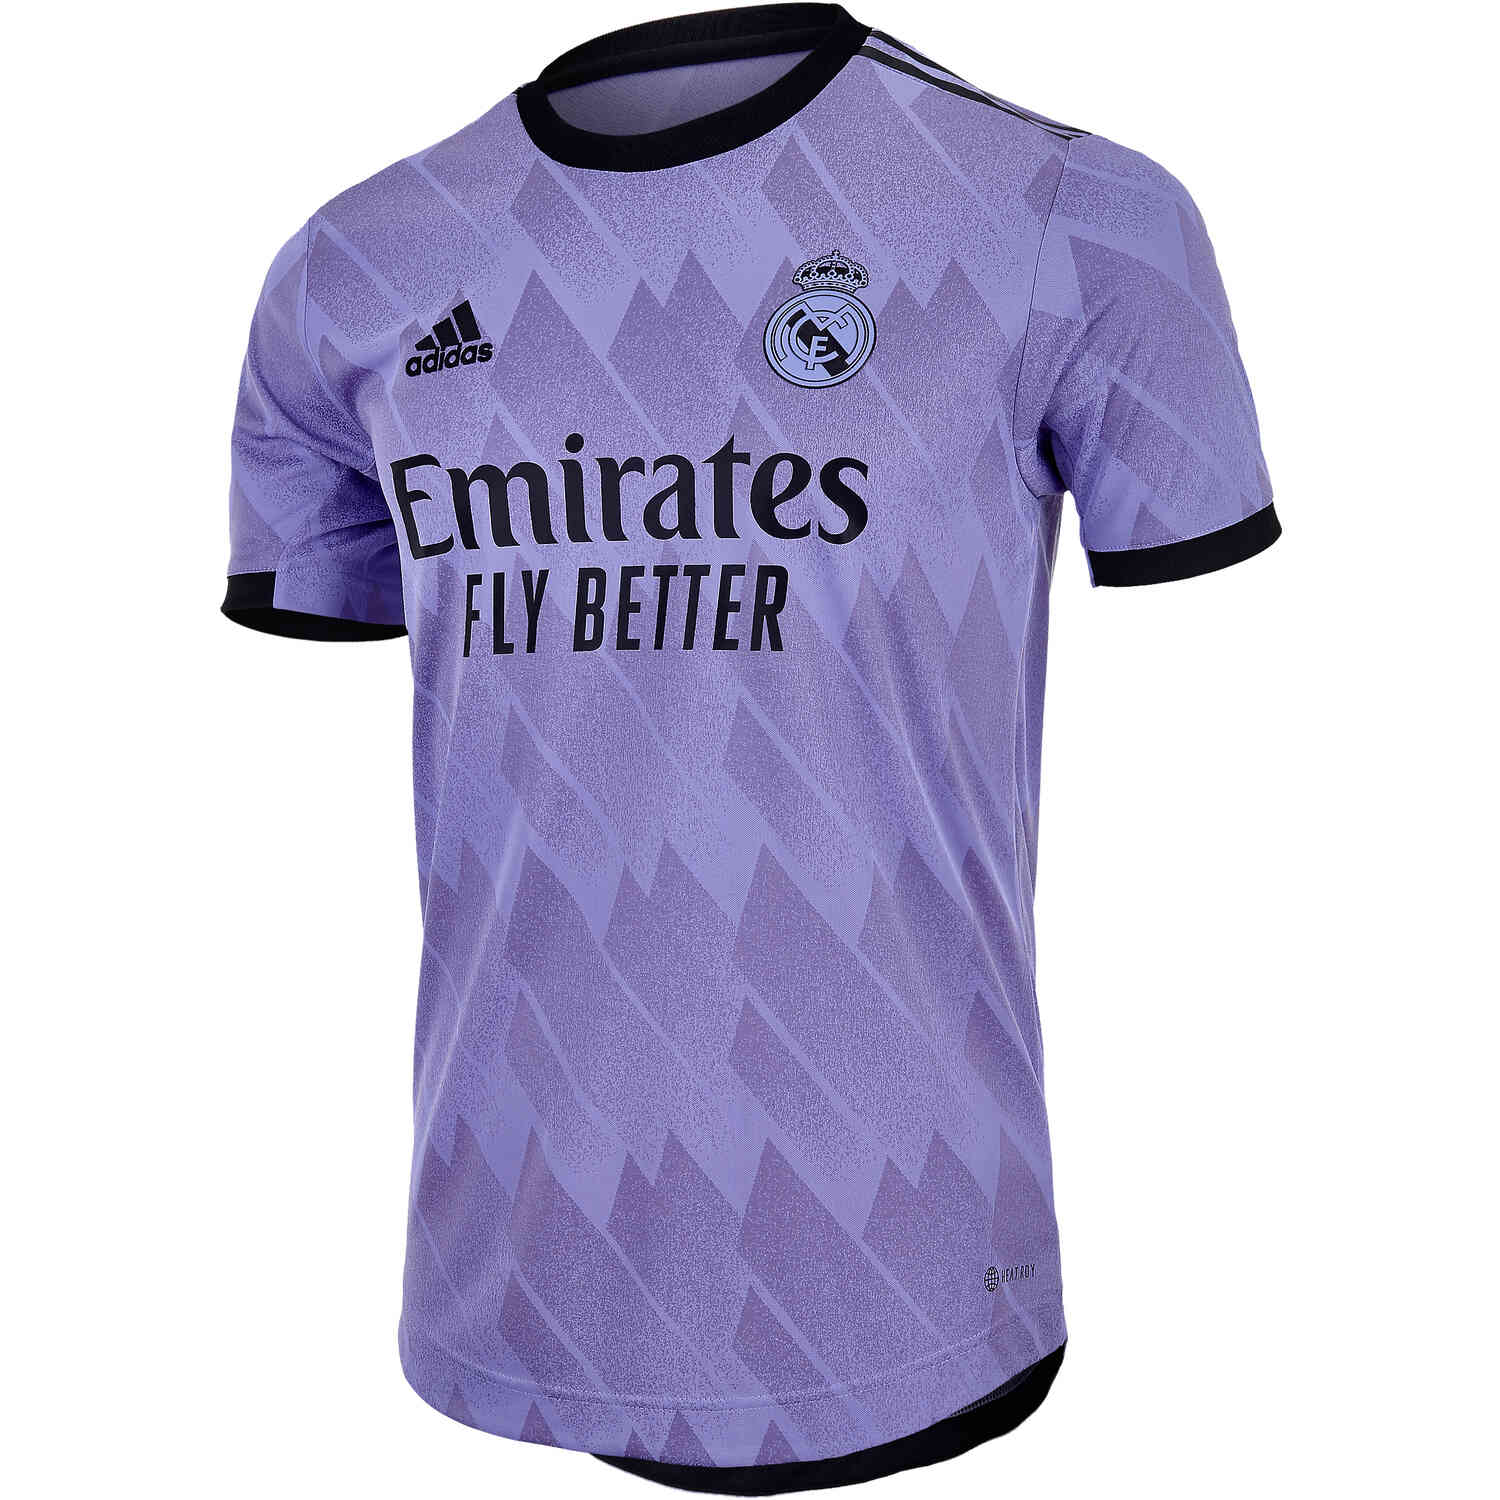 2022/23 adidas Eduardo Camavinga Real Madrid Away Authentic Jersey